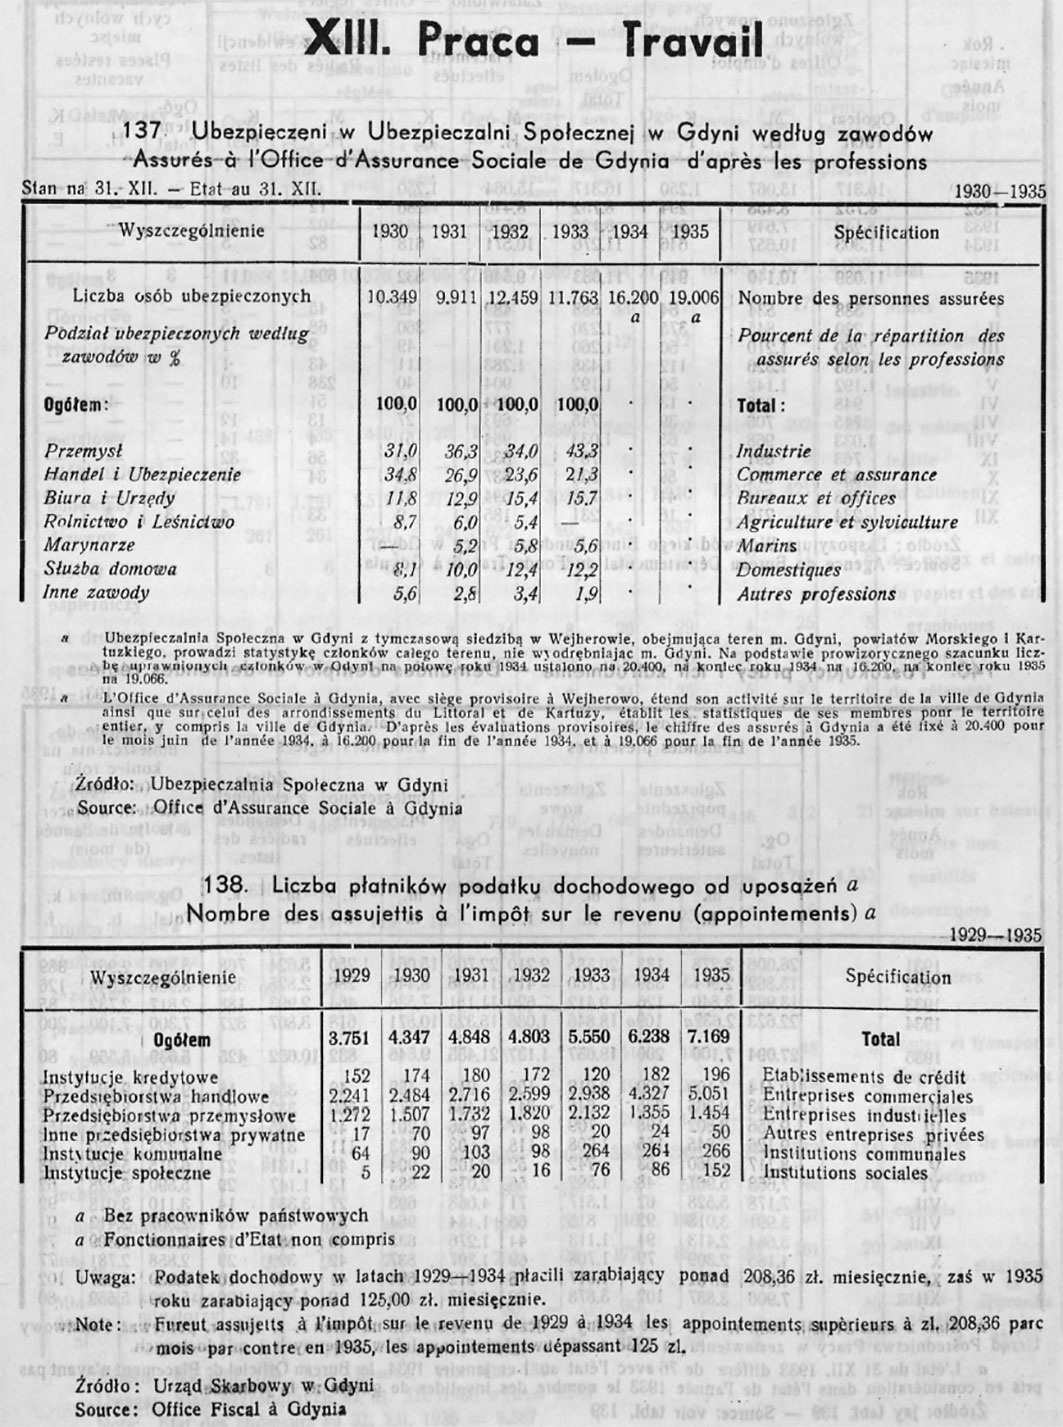 Finanse miejskie, [W:] Rocznik Statystyczny Gdyni 1933-1934 / Redagował Bolesław Polkowski Kierownik Referatu Statystycznego, Gdynia 1934